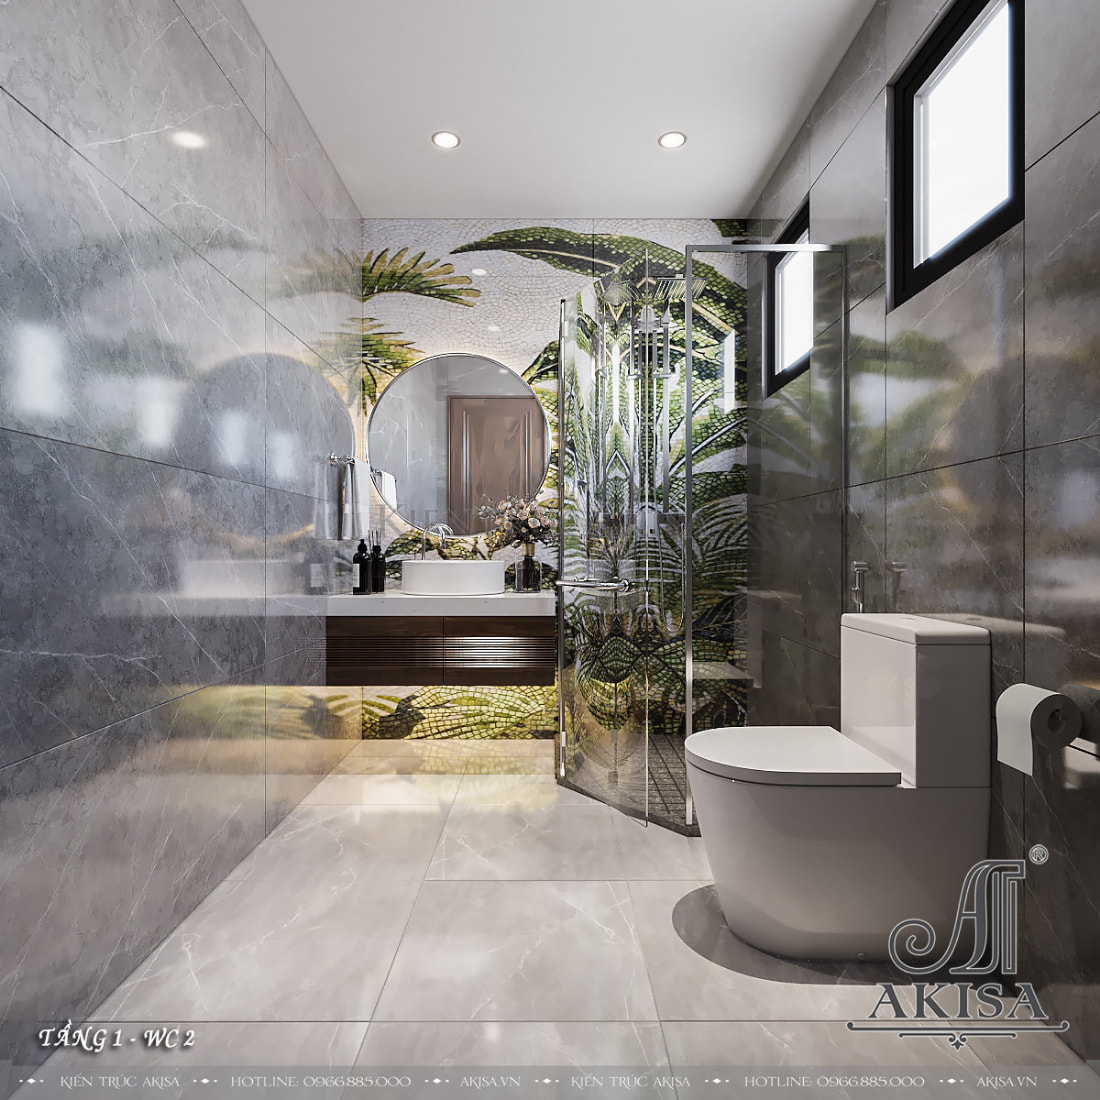 Phòng tắm hiện đại với tông màu xám sang trọng cùng vật liệu kính thời thượng. 